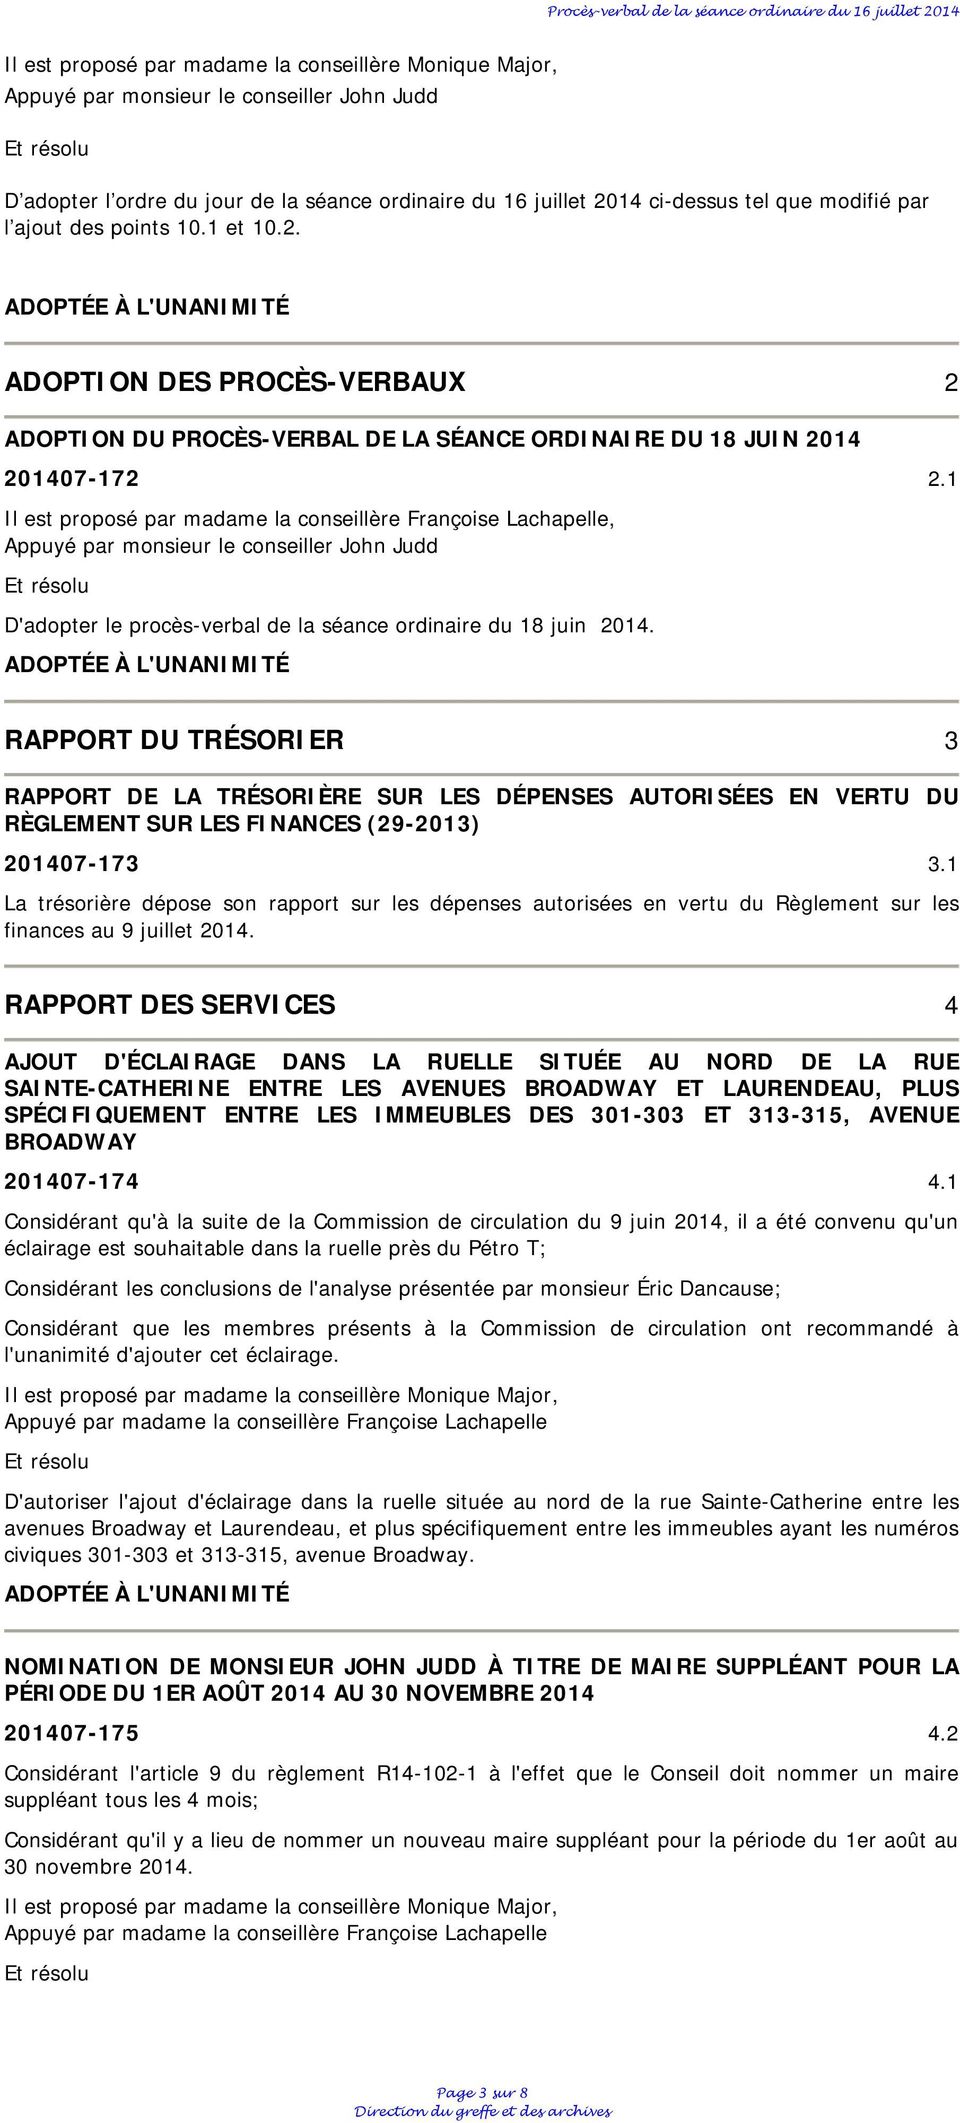 1 Il est proposé par madame la conseillère Françoise Lachapelle, Appuyé par monsieur le conseiller John Judd D'adopter le procès-verbal de la séance ordinaire du 18 juin 2014.